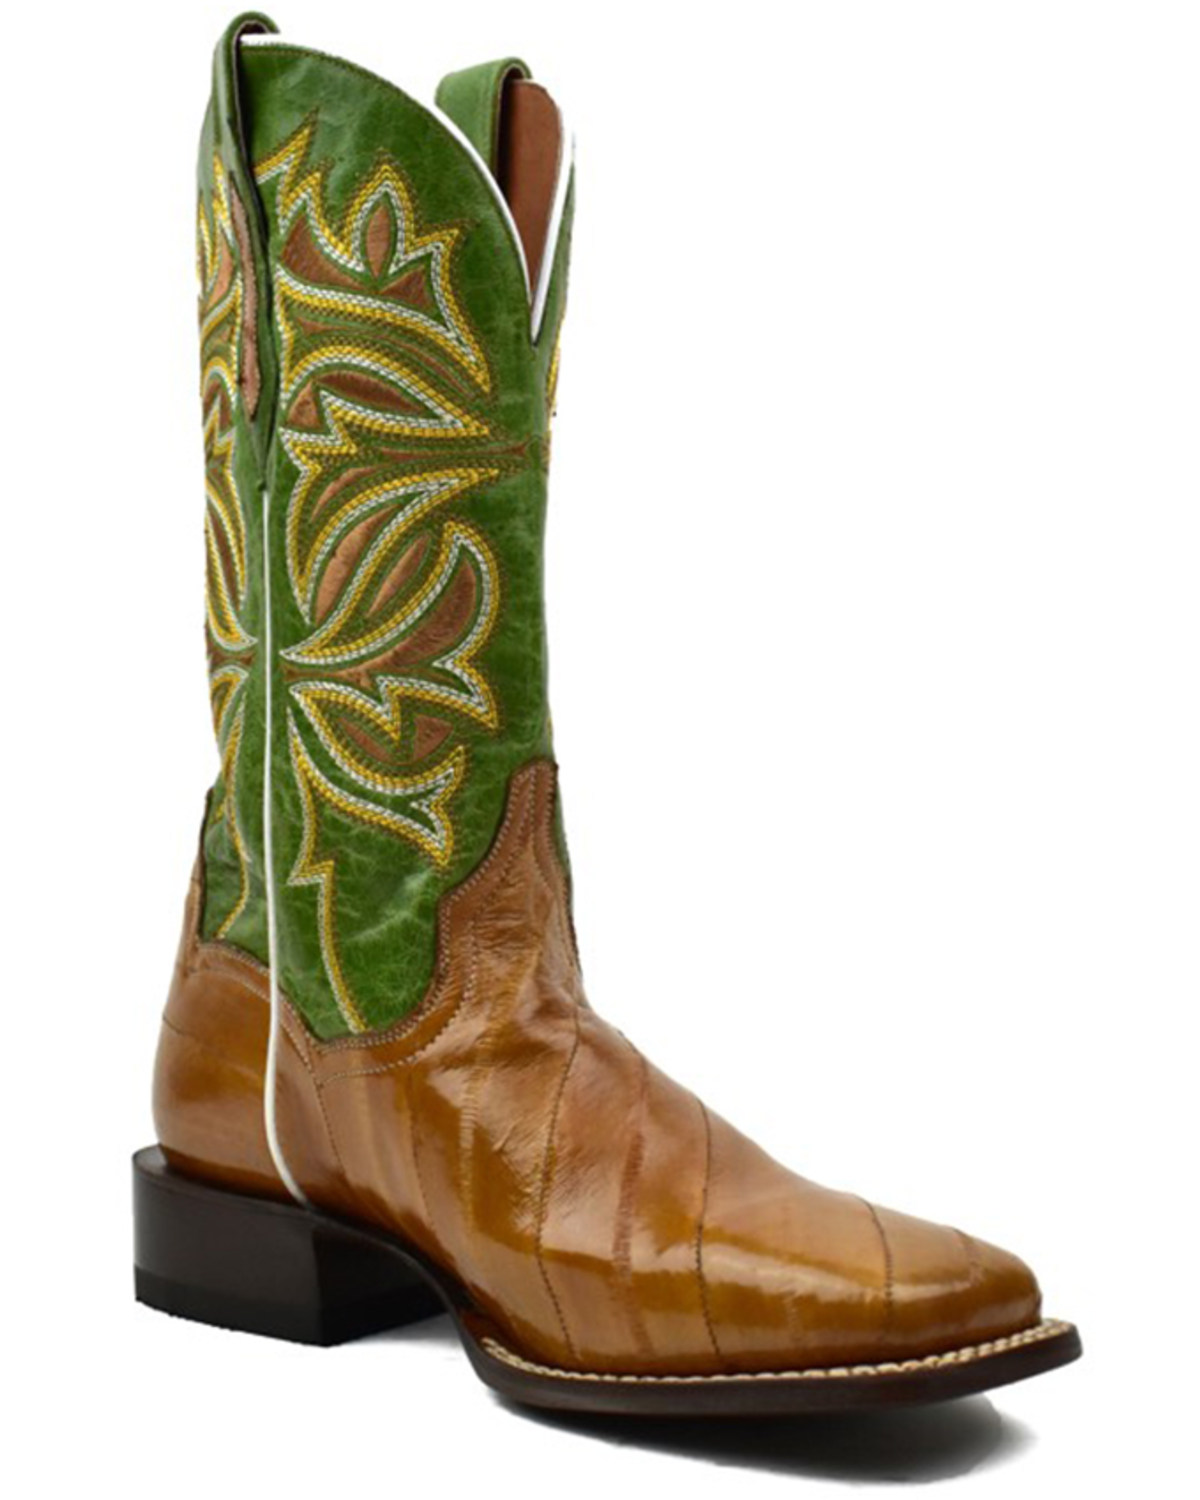 Dan Post Women's Exotic Eel Skin Western Boot - Broad Square Toe